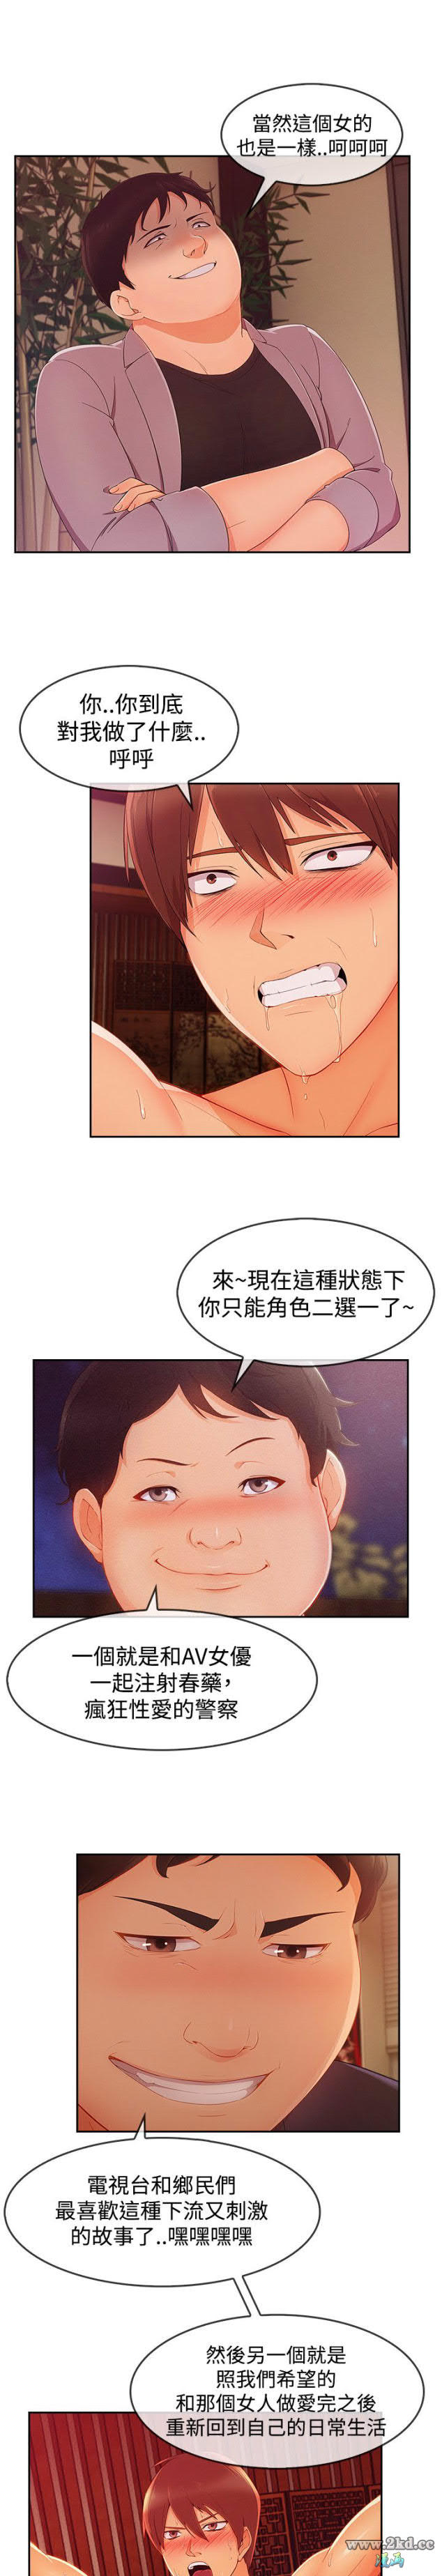 《淑女花苑》漫画 第3季 第14话